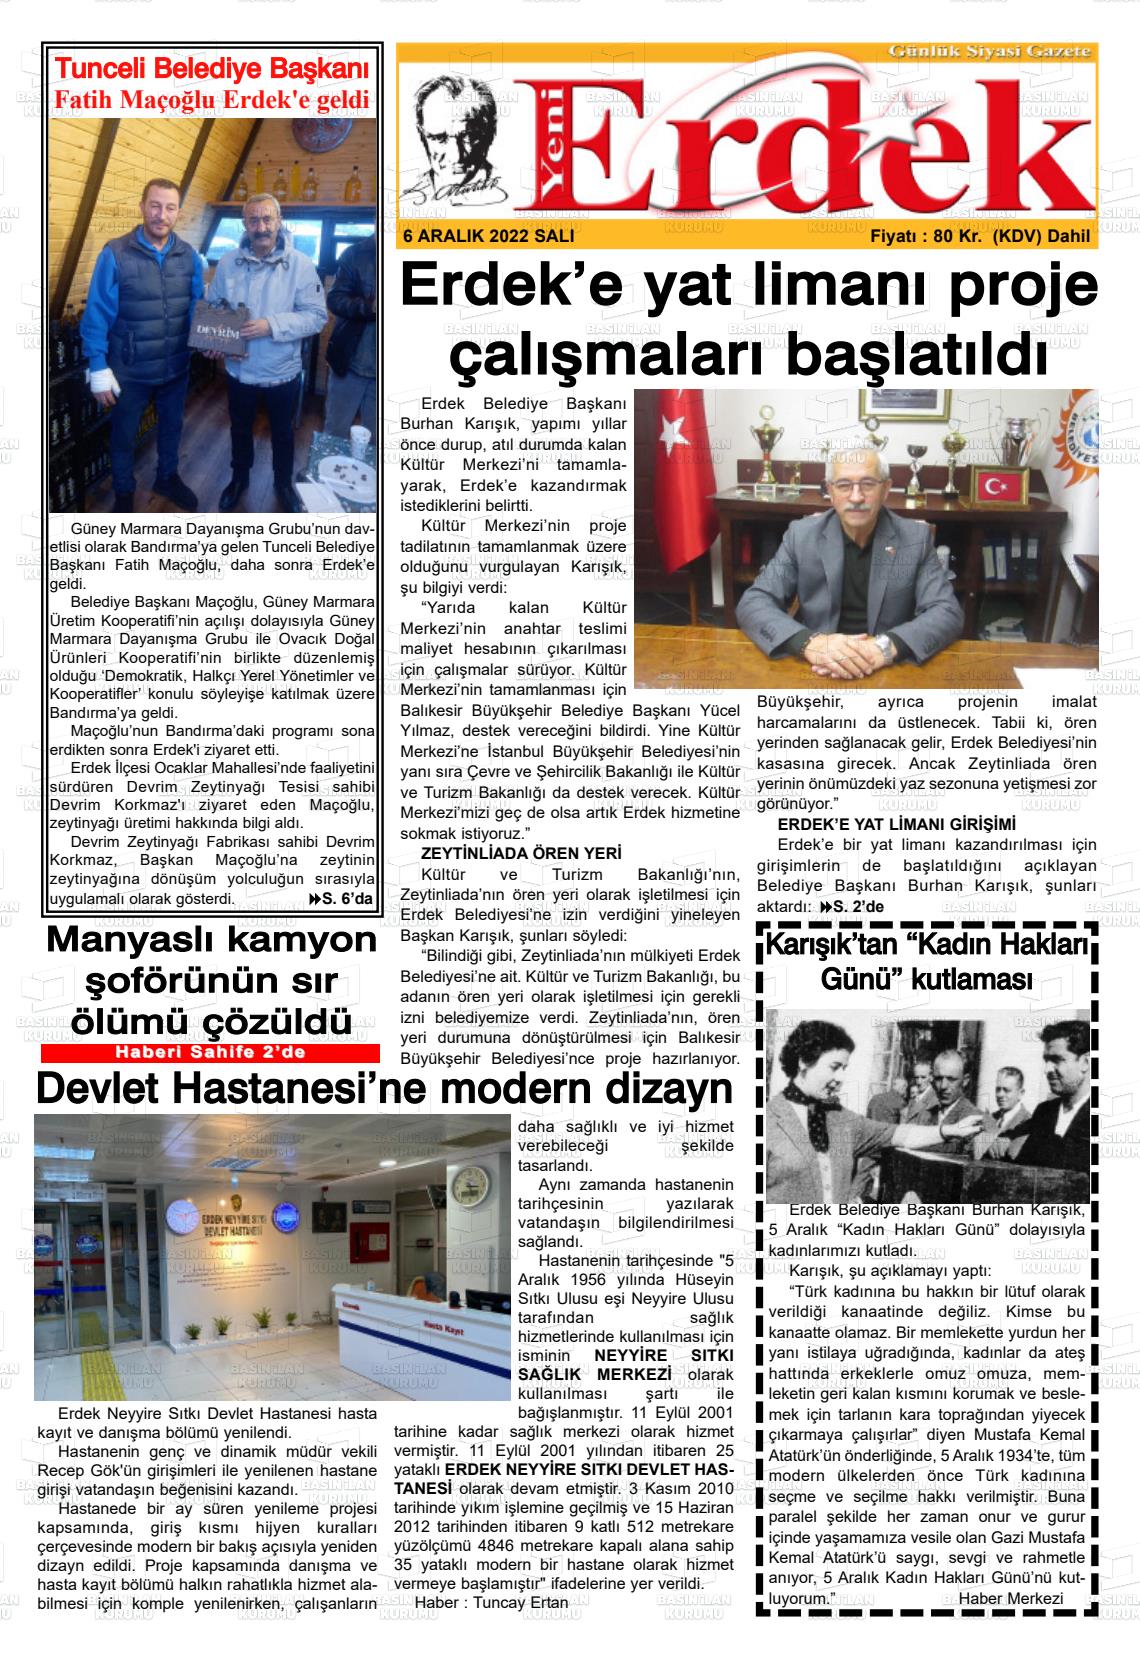 06 Aralık 2022 Yeni Erdek Gazete Manşeti